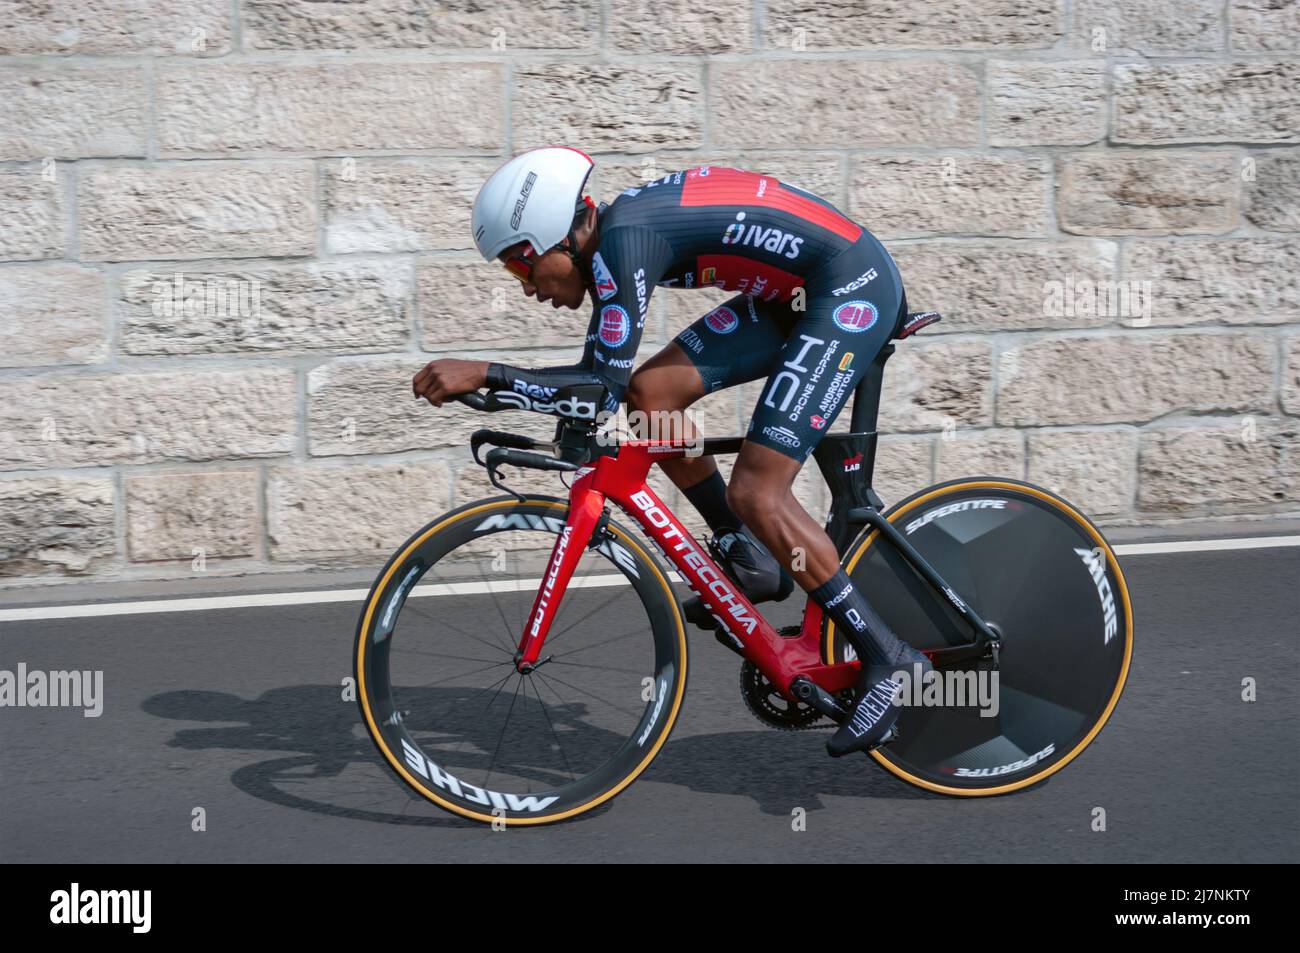 BUDAPEST, UNGARN - 07. MAI 2022: Radrennfahrer Natnael Tesfatsion DROHNENHOPPER - ANDRONI GIOCATTOLI, Giro D'Italia Etappe 2 Zeitfahren - Radsportwettlauf Stockfoto